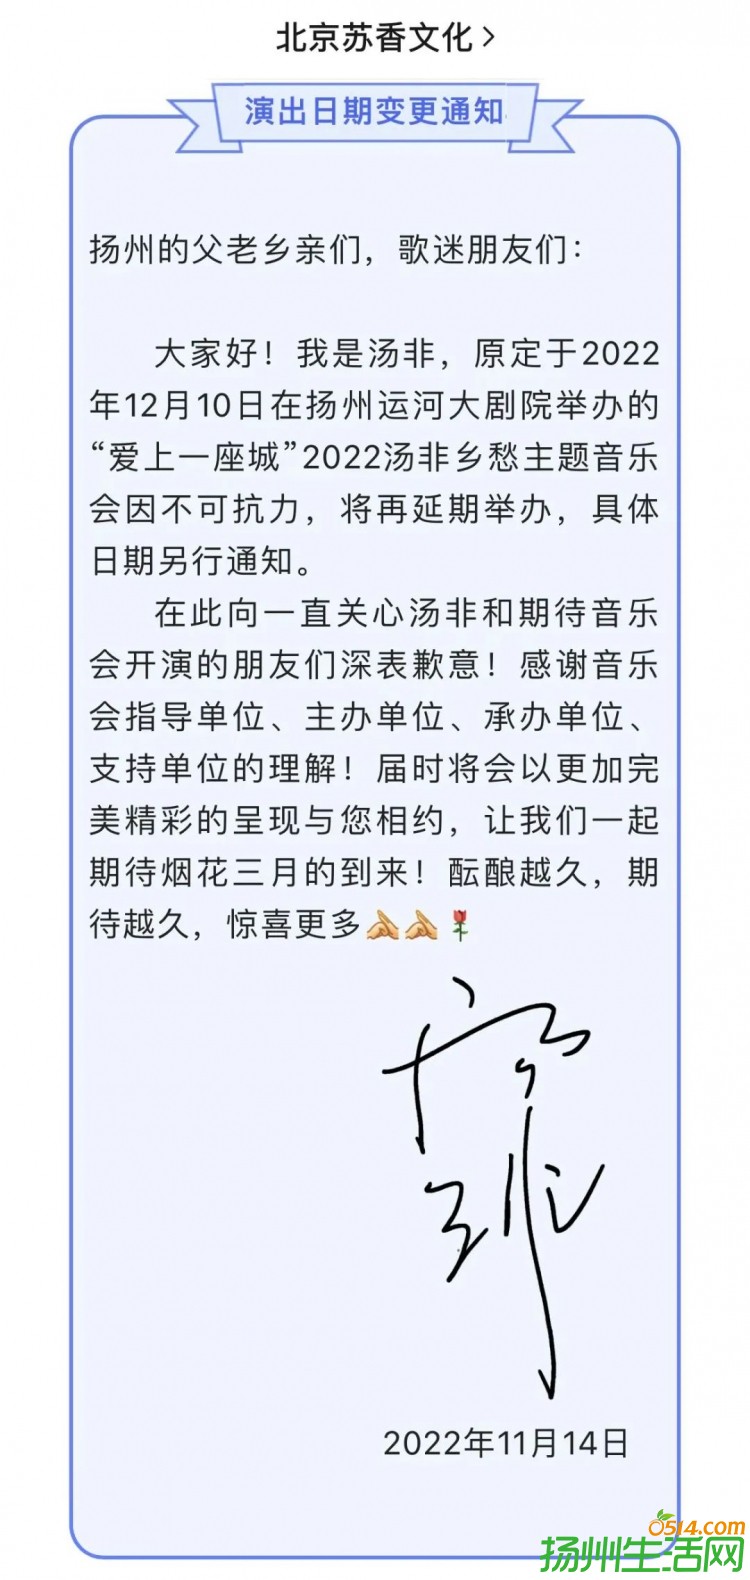 中国扬州运河大剧院部分演出延期公告